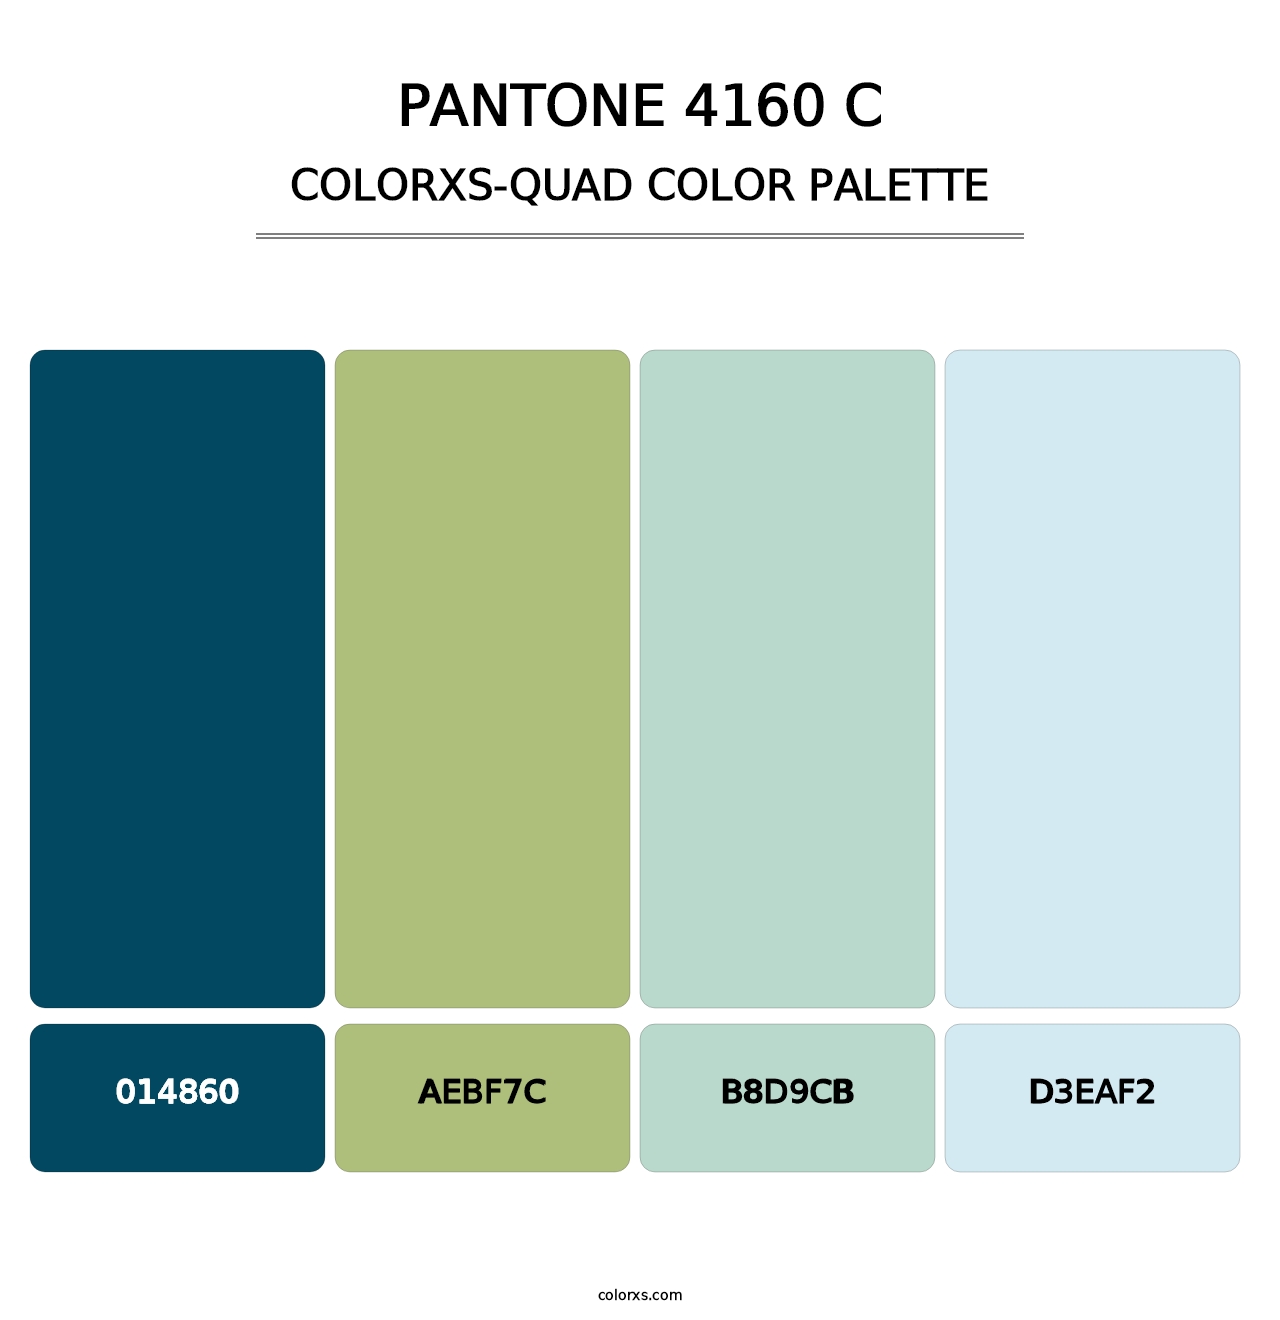 PANTONE 4160 C - Colorxs Quad Palette